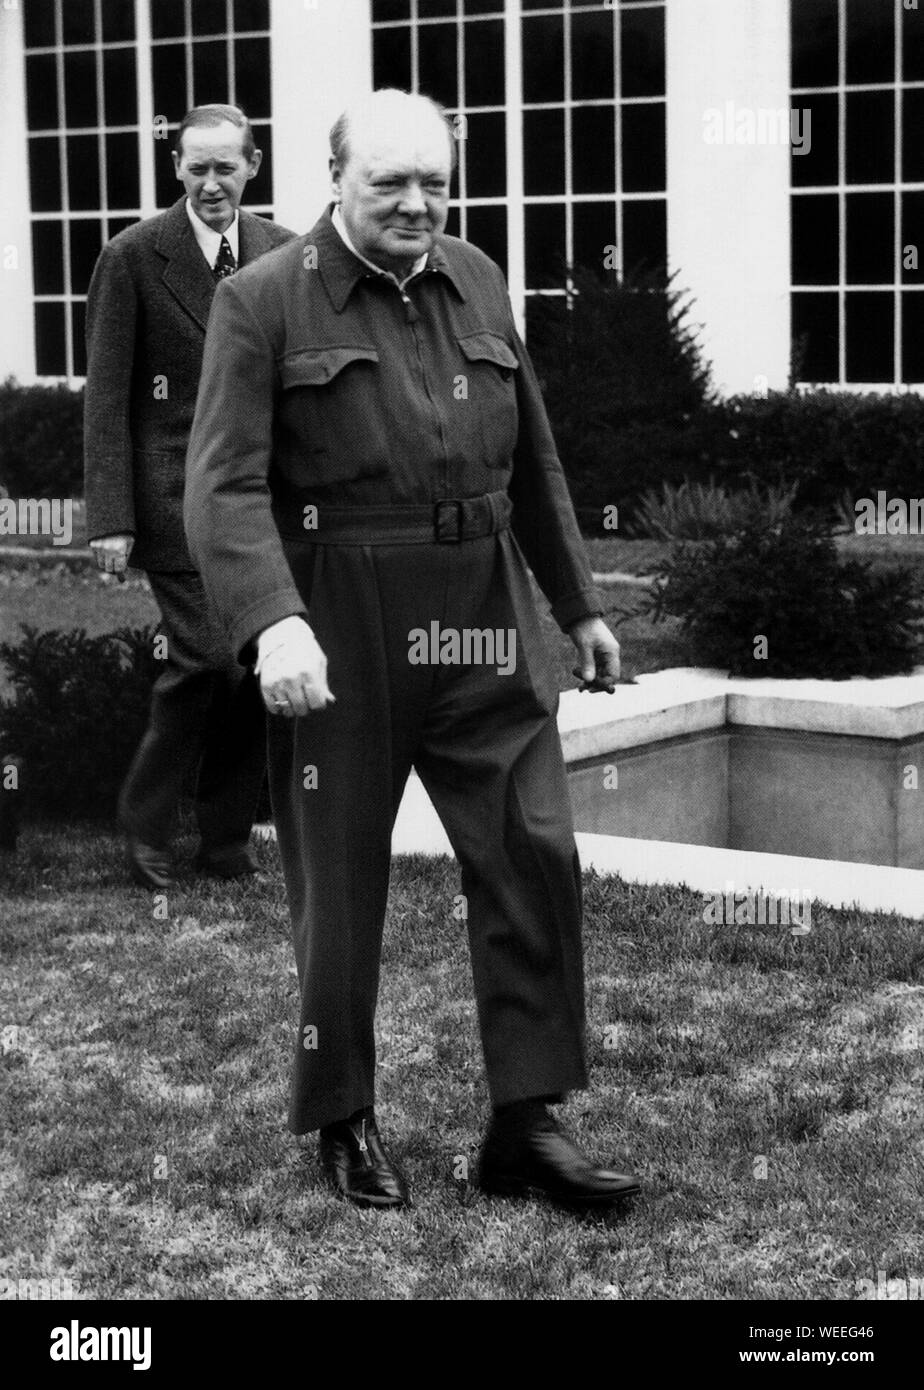 Winston Churchill tragen Iren Anzug sein Markenzeichen' im Weißen Haus Garten. Dezember 1941 Stockfoto